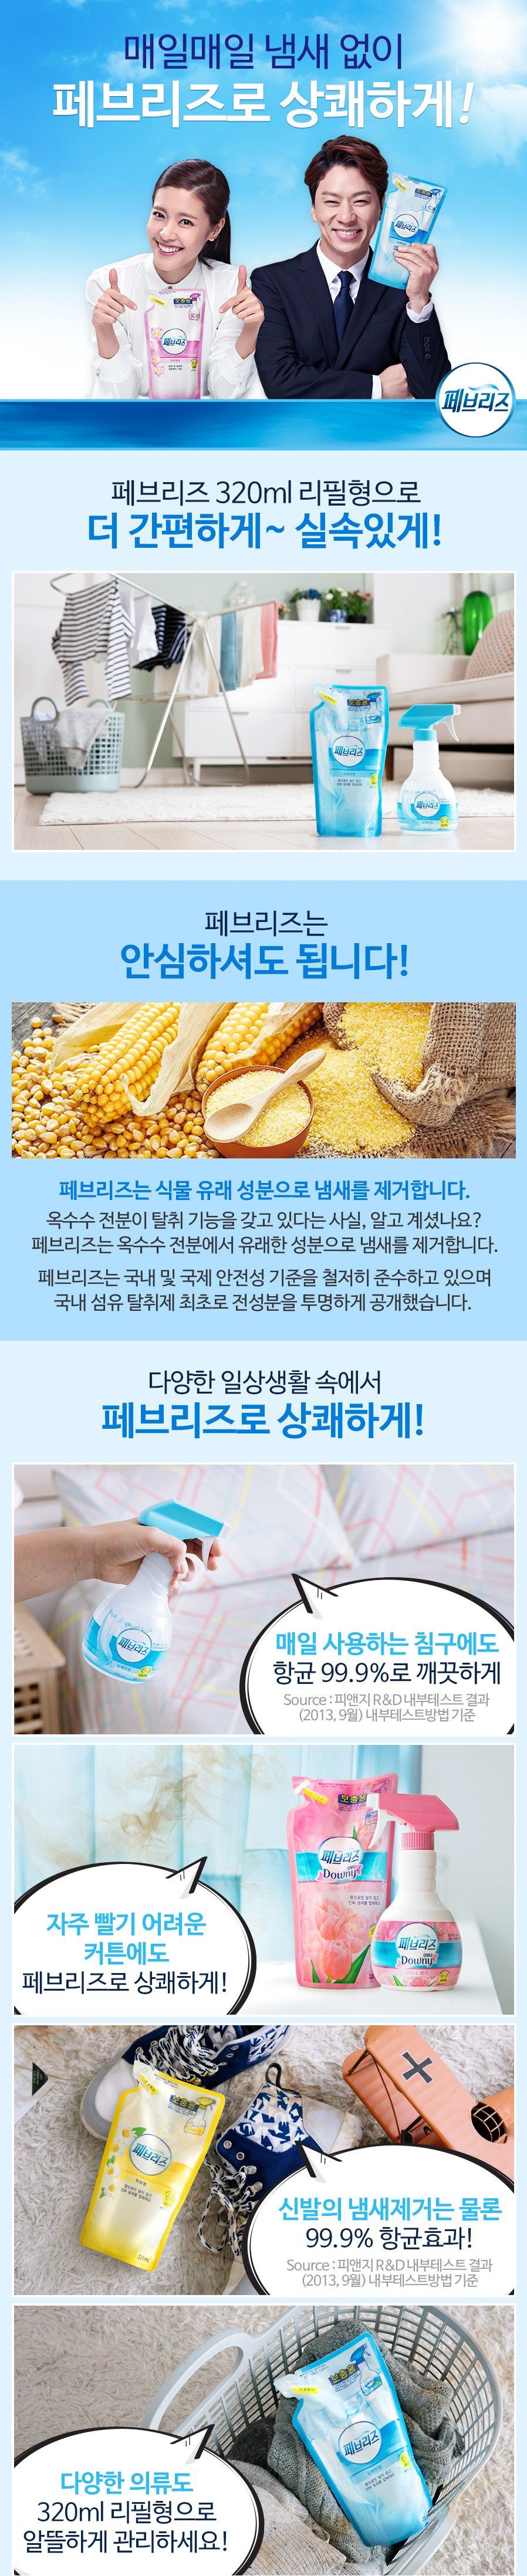 韓國食品-[P&G] 페브리즈리필[은은한향] 320ml